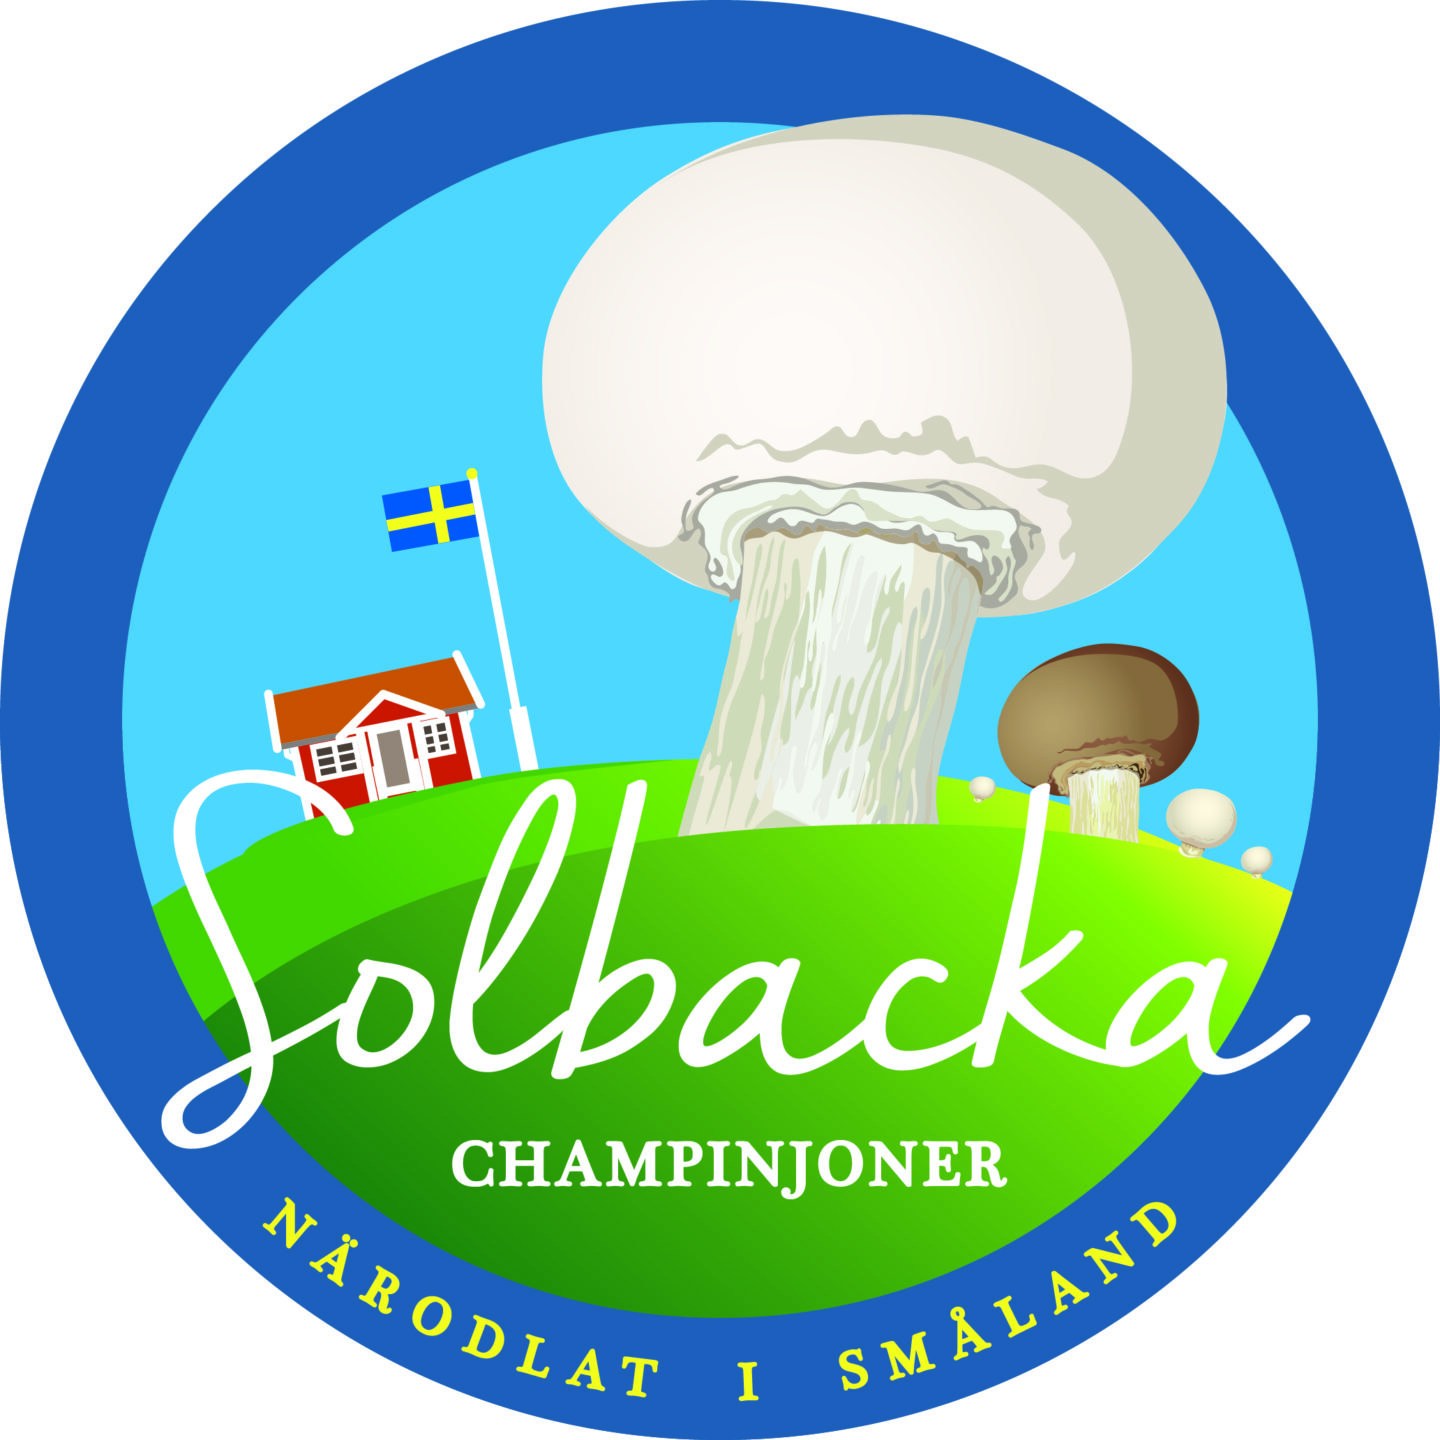 En Logotyp vi skade åt Solbacka Champinjoner i Småland